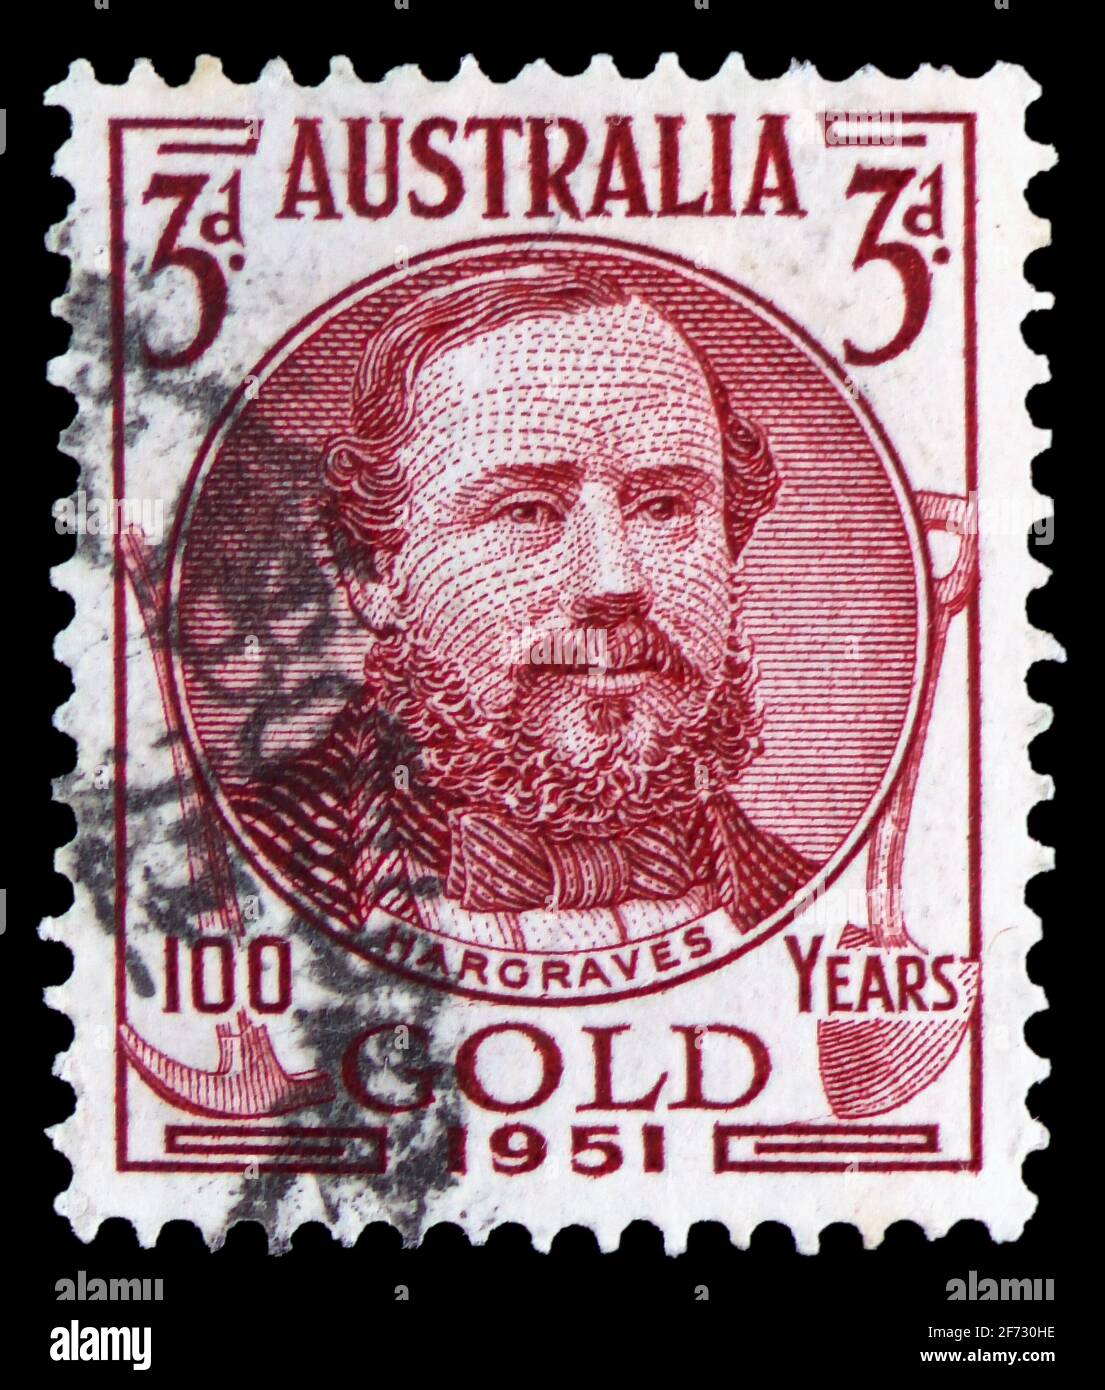 MOSKAU, RUSSLAND - 12. JANUAR 2021: Die in Australien gedruckte Briefmarke zeigt Edward Hammond Hargraves, 100 Jahre Goldentdeckung und verantwortlichen Vict Stockfoto